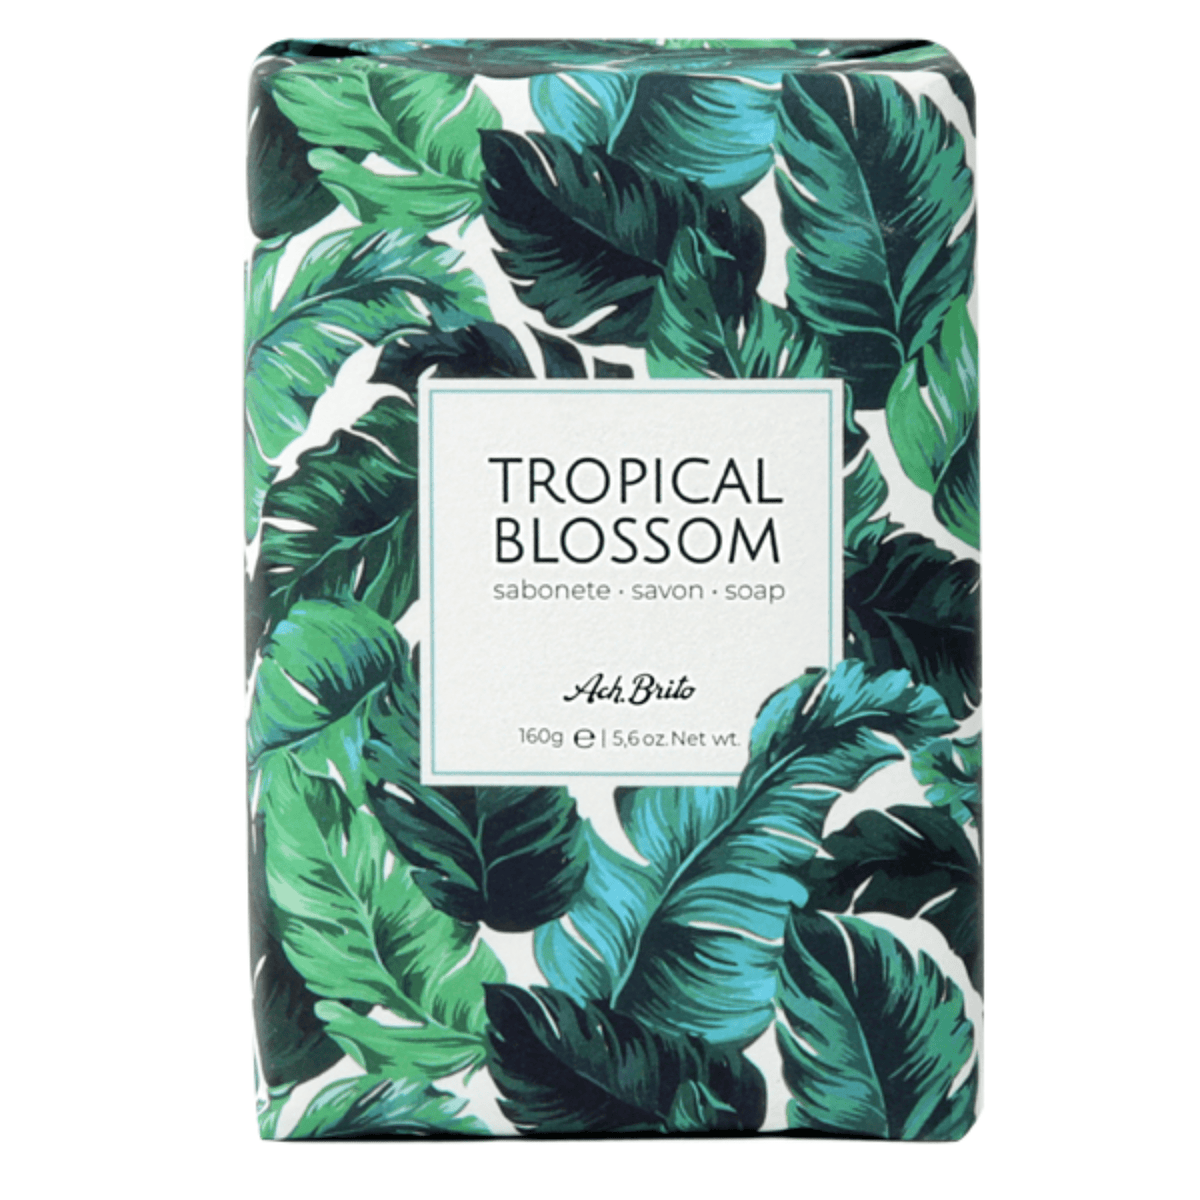 Alternate Image of Tropical Blossom Soap